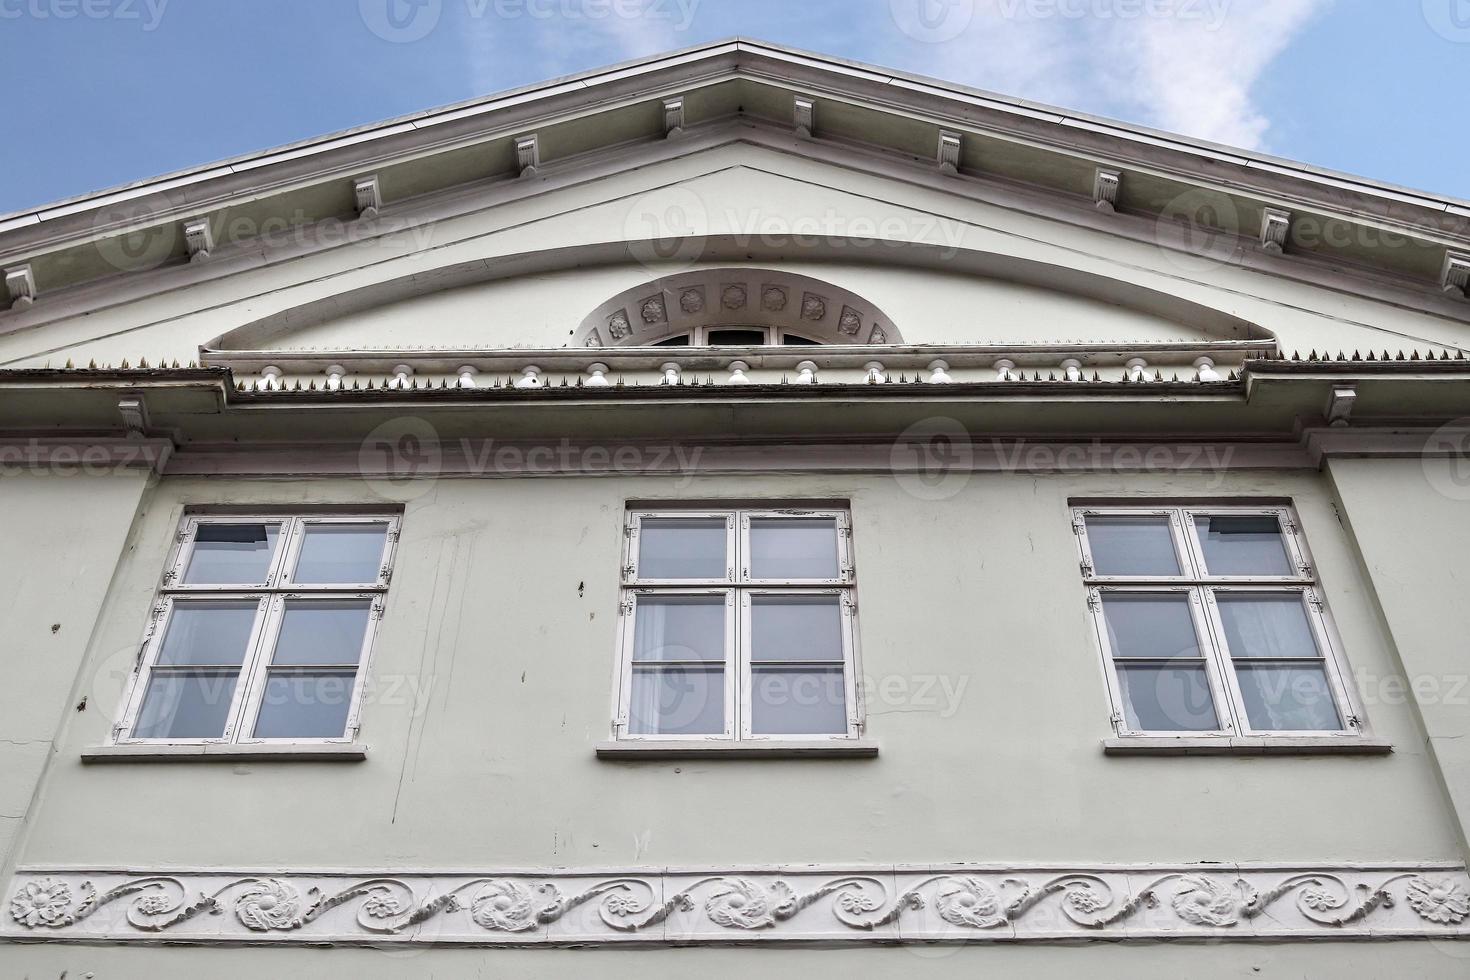 schöne alte Fassadenarchitektur in der Kleinstadt Flensburg foto